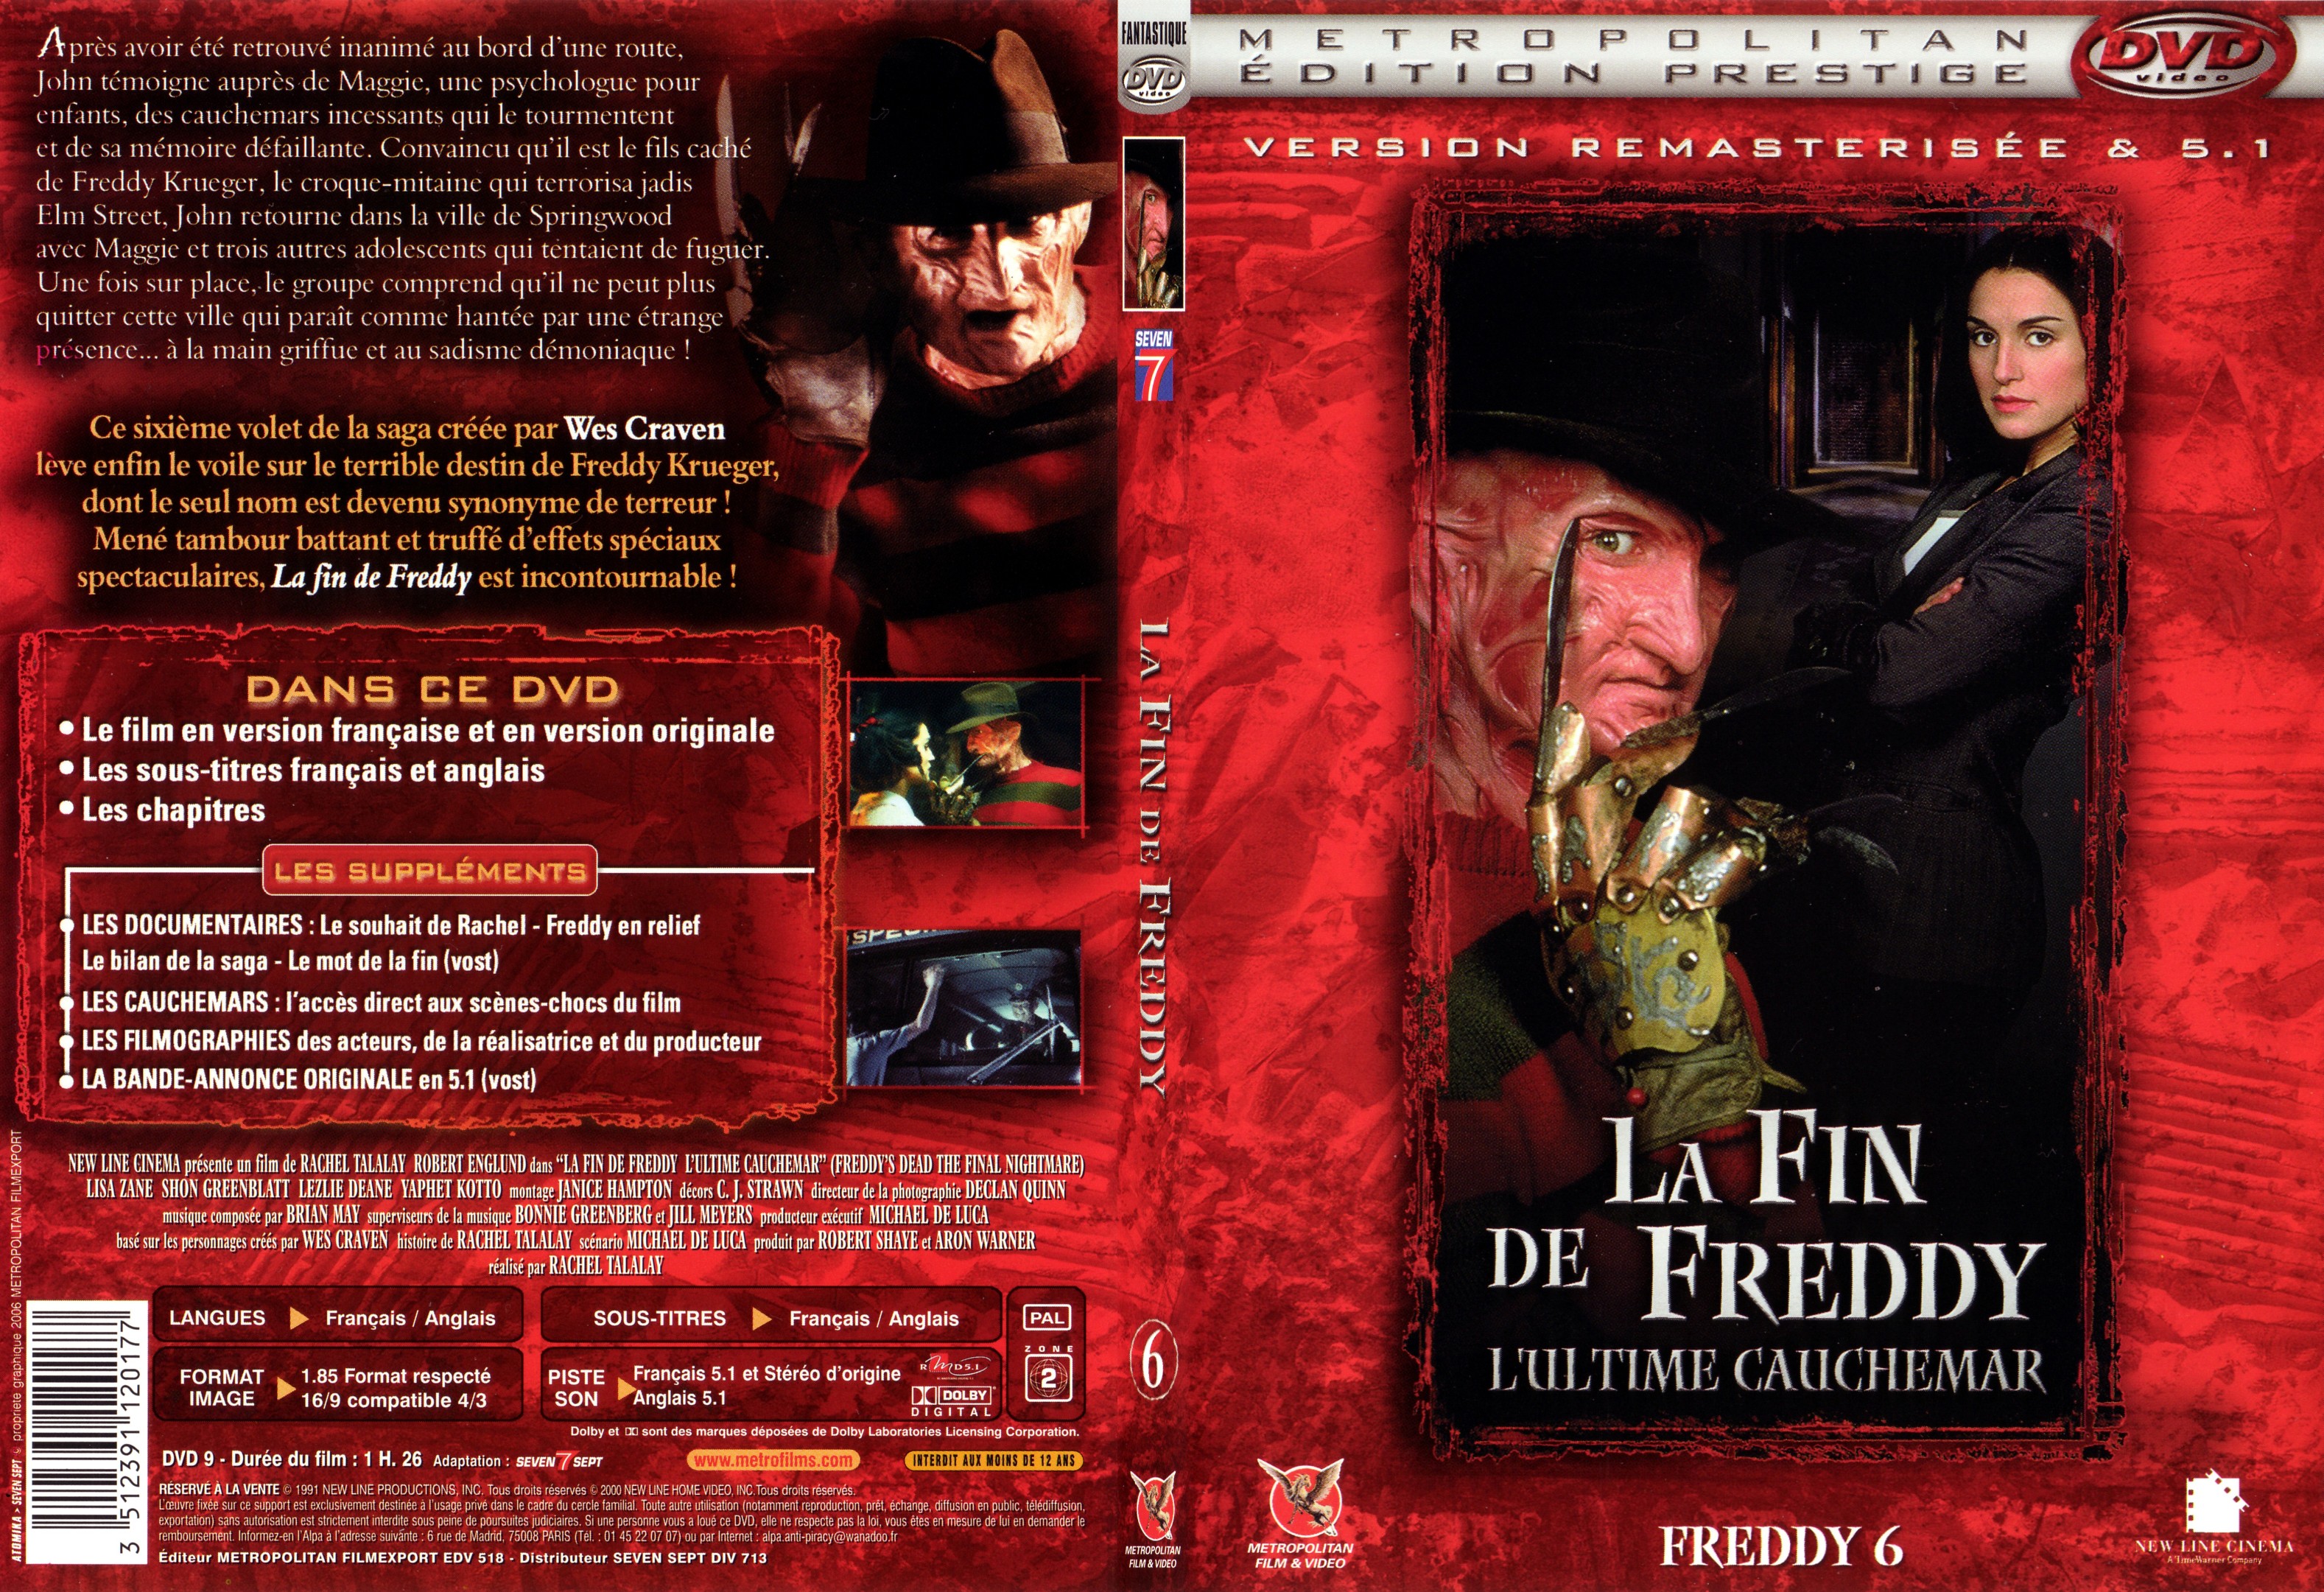 Jaquette DVD Freddy 6 La fin de Freddy - SLIM